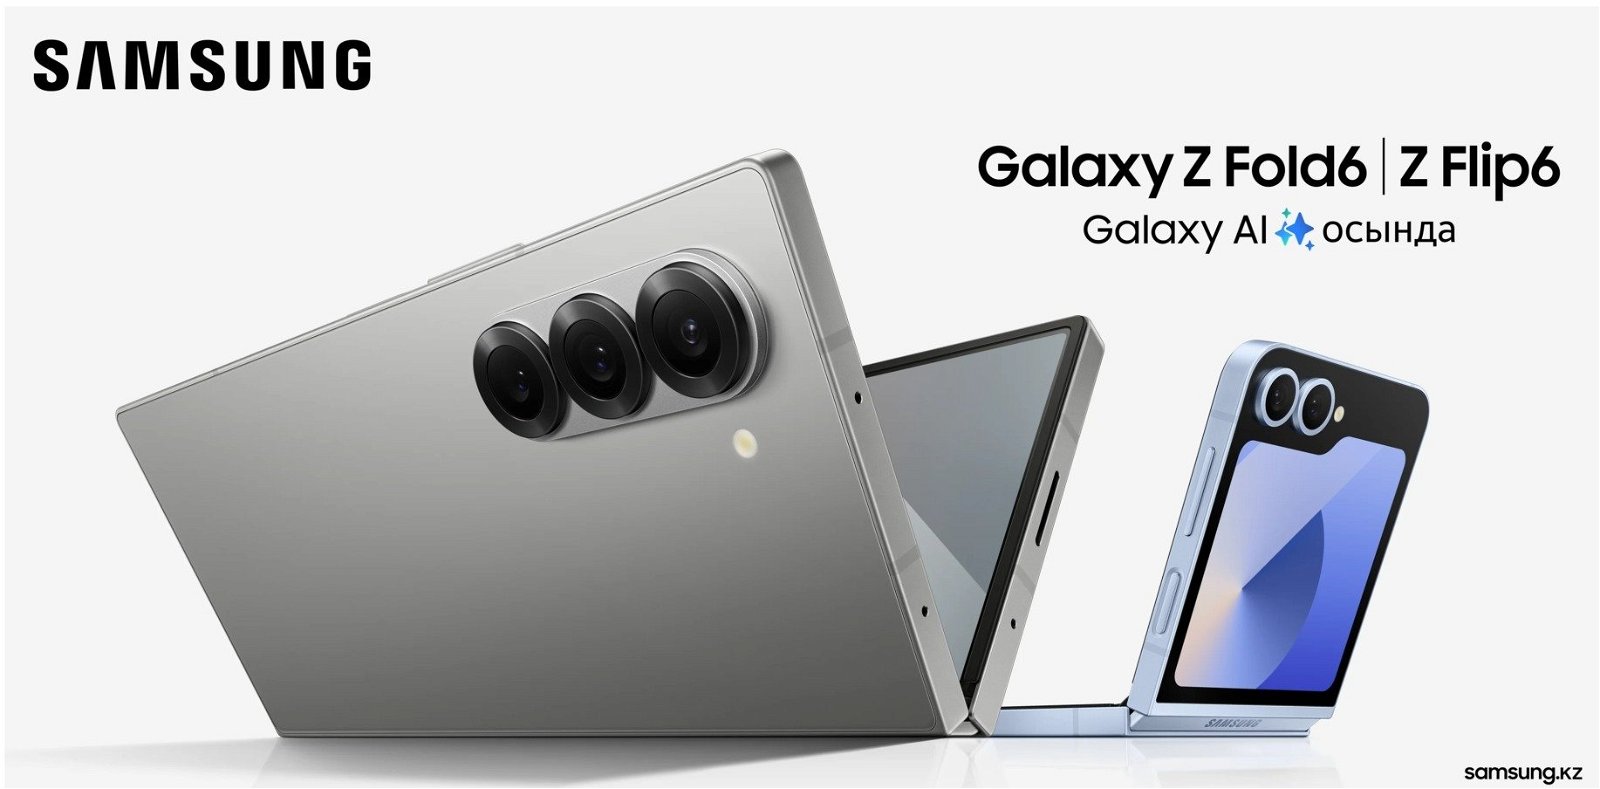 Immagine di Ecco Galaxy Z Fold6 e Z Flip6, Samsung li mostra per sbaglio in uno spot